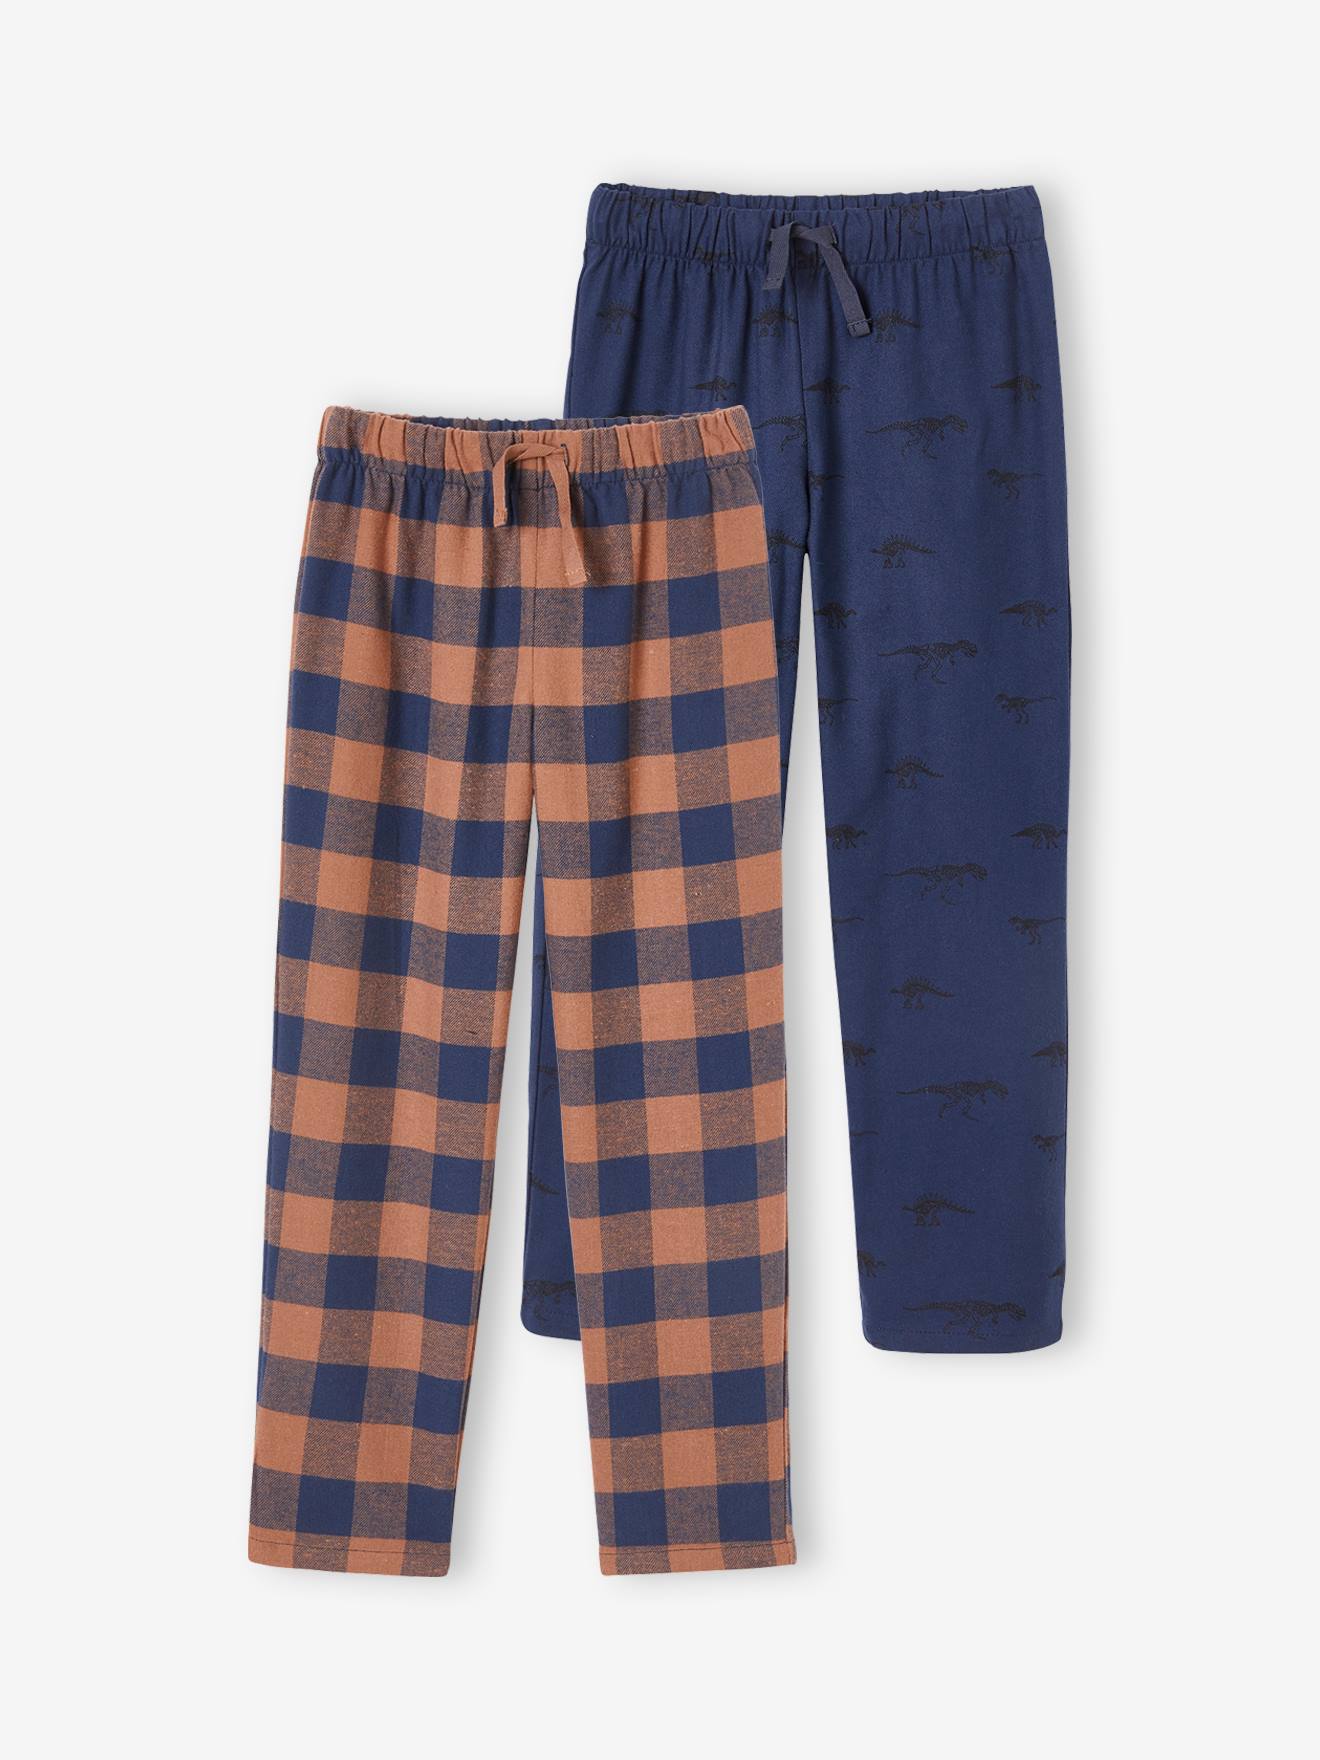 Set met 2 pyjamabroeken flanel voor jongens - set bruin blauw,